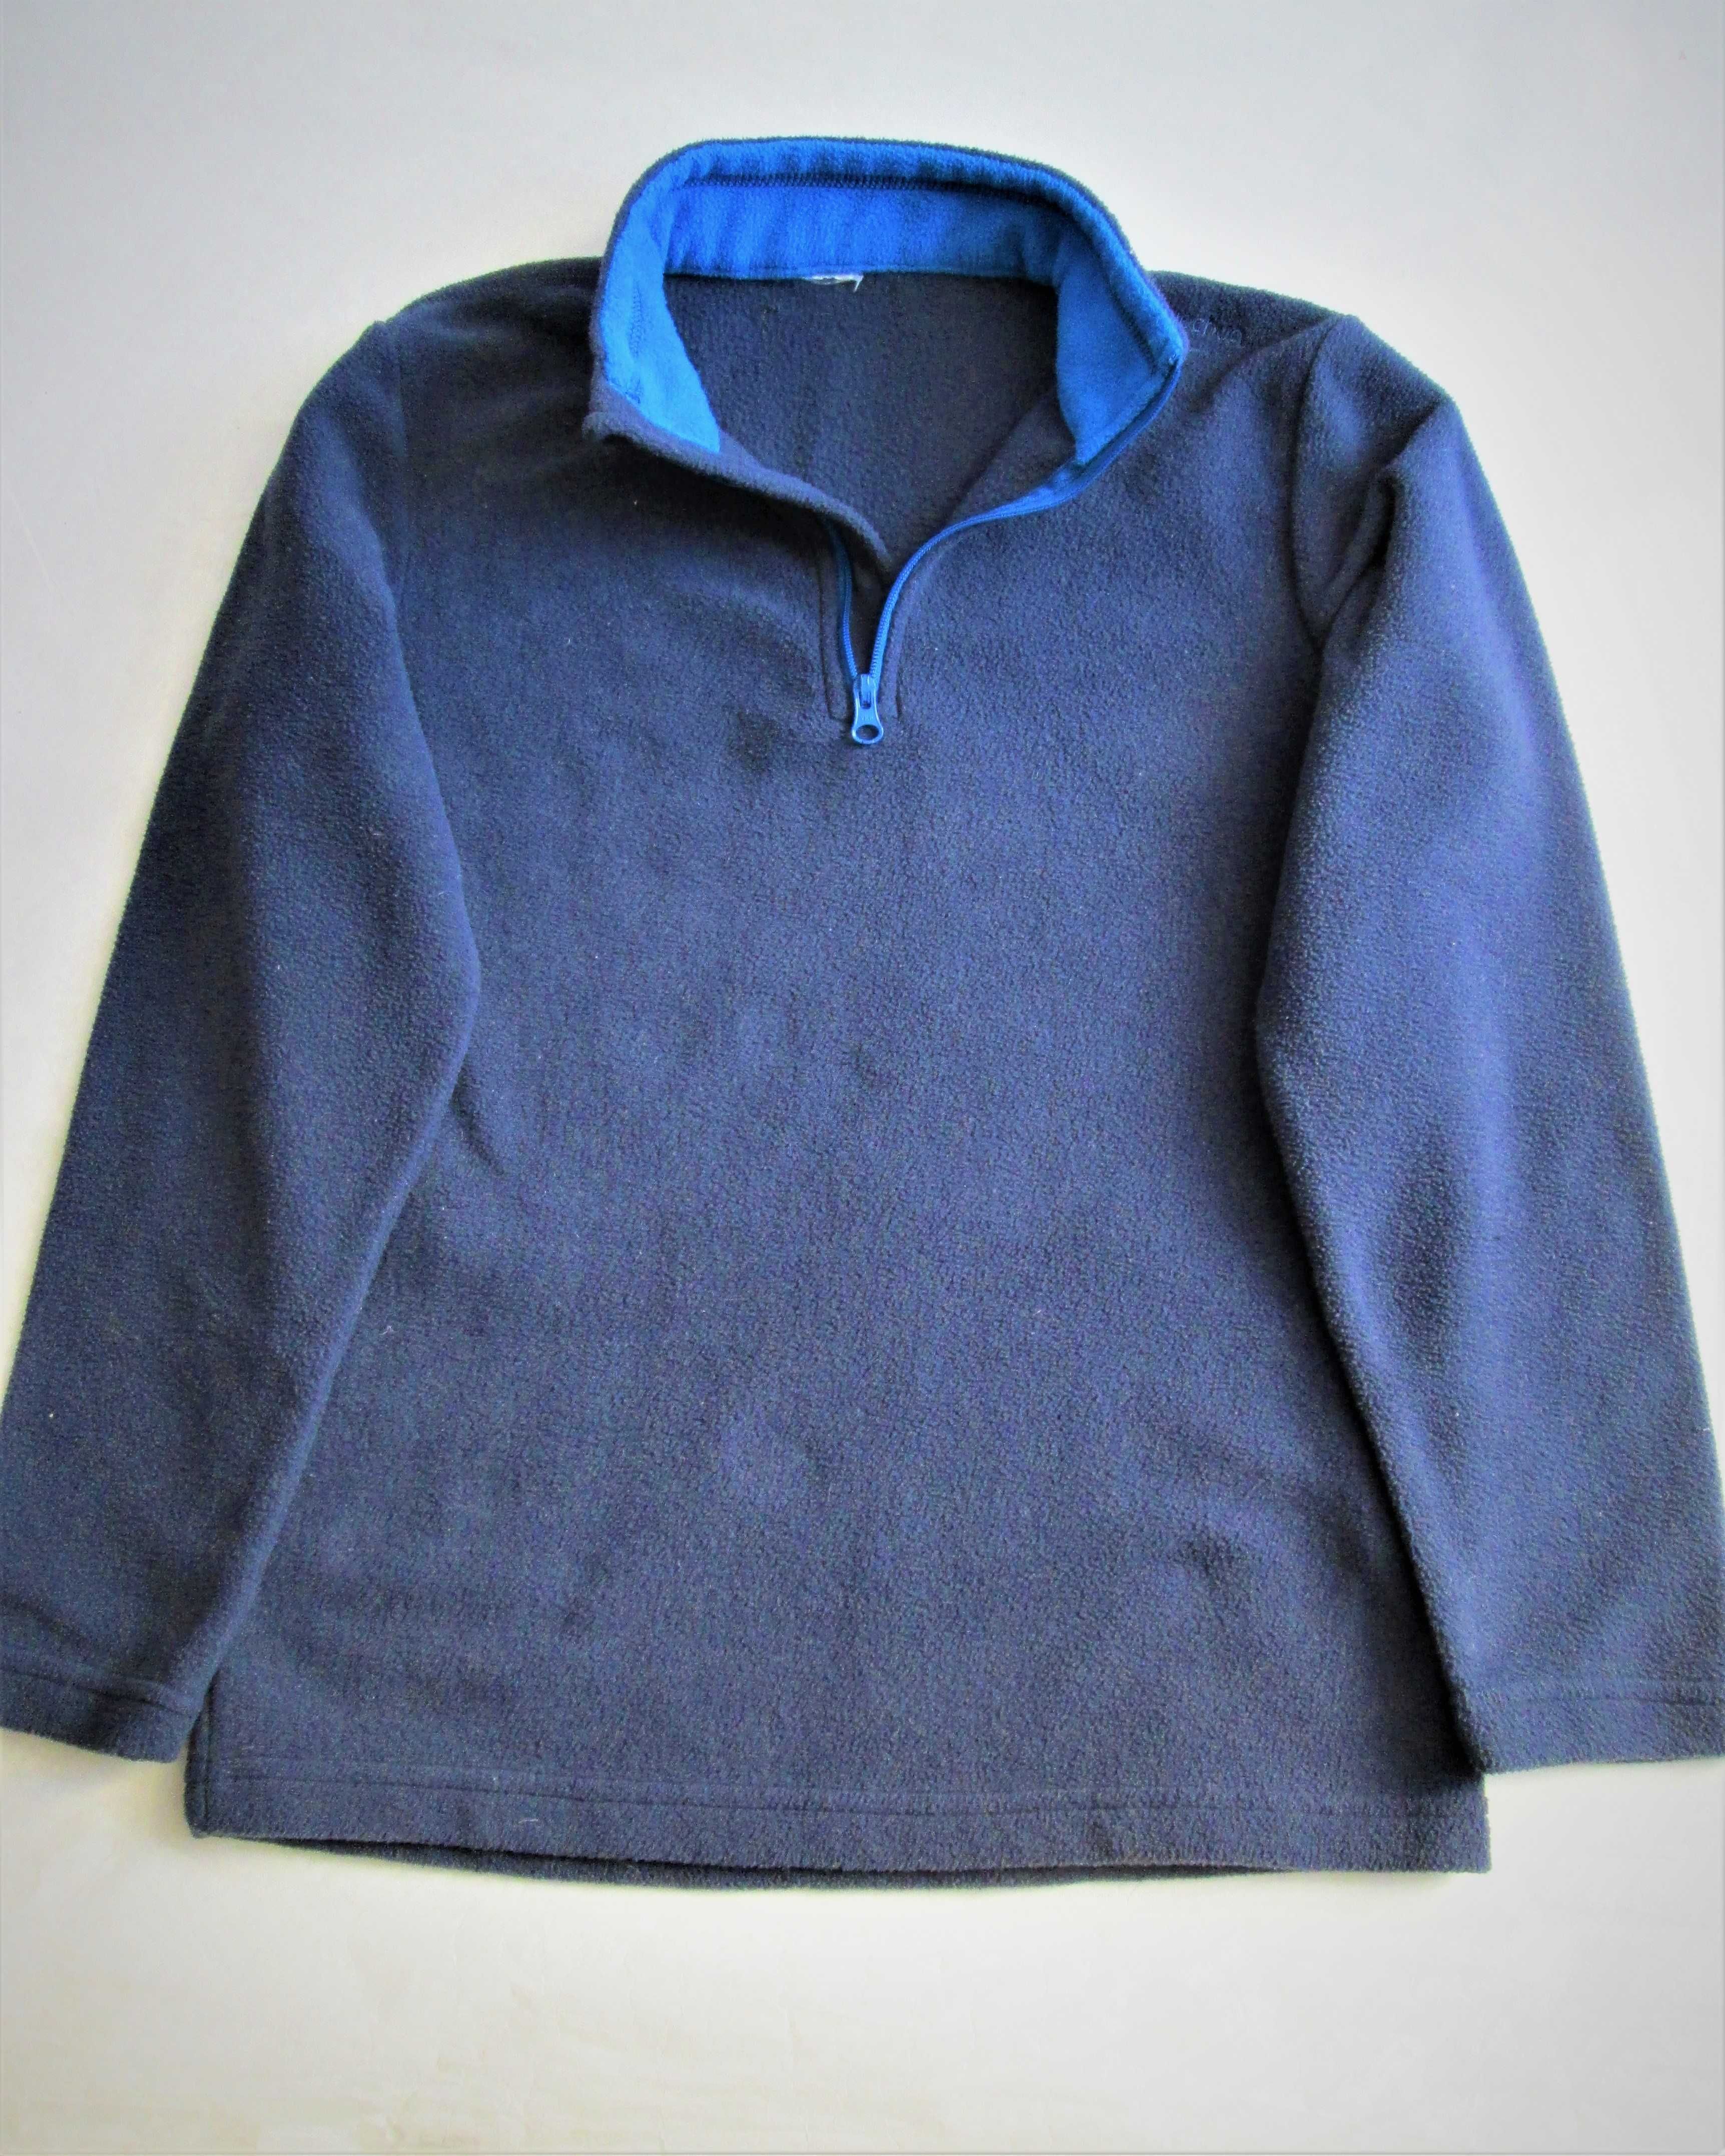 Bluza polar termiczna, OXYLINE, 140 cm, 10 lat